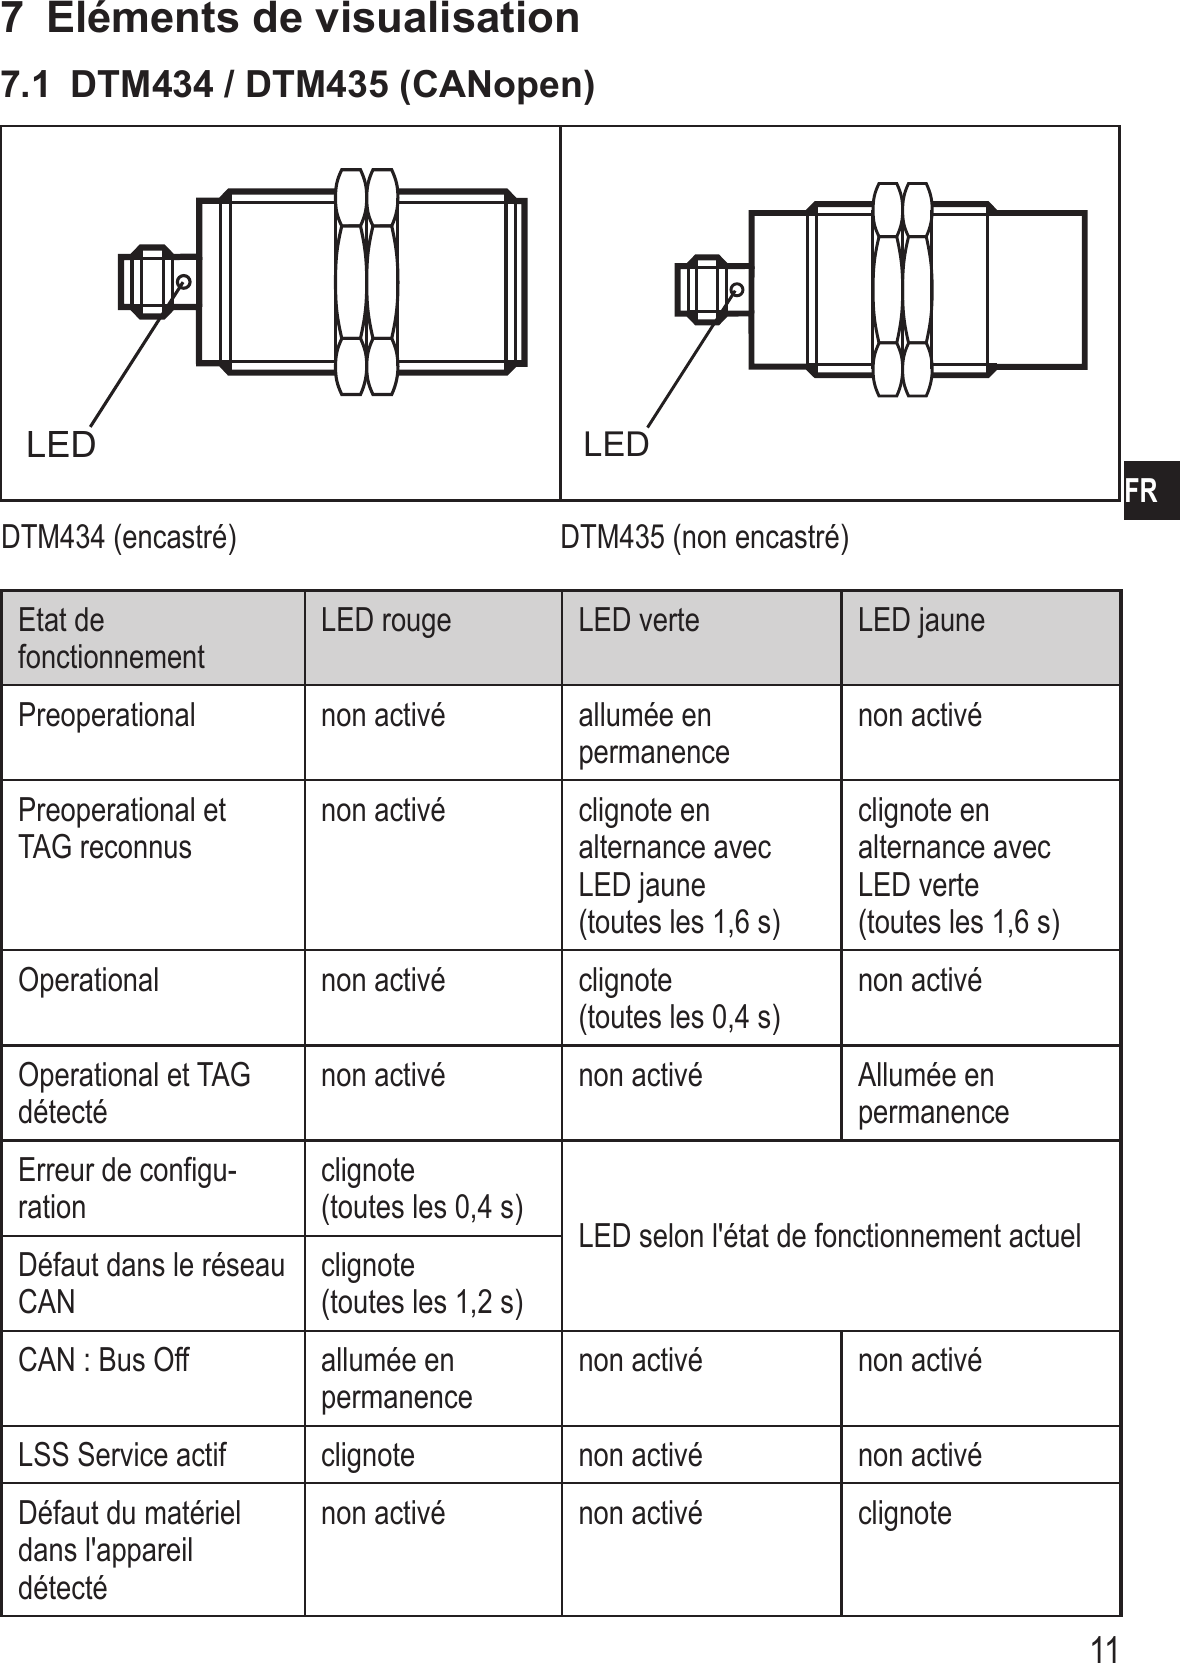 11FR7  Eléments de visualisation7.1  DTM434 / DTM435 (CANopen)LED LEDDTM434 (encastré) DTM435 (non encastré)Etat de fonctionnementLED rouge LED verte LED jaunePreoperational non activé allumée en permanencenon activéPreoperational etTAG reconnusnon activé clignote en alternance avec LED jaune  (toutes les 1,6 s)clignote en alternance avec LED verte  (toutes les 1,6 s)Operational non activé clignote  (toutes les 0,4 s)non activéOperational et TAG détecténon activé non activé Allumée en permanenceErreur de configu-rationclignote  (toutes les 0,4 s) LED selon l&apos;état de fonctionnement actuelDéfaut dans le réseau CANclignote  (toutes les 1,2 s)CAN : Bus Off allumée en permanencenon activé non activéLSS Service actif clignote non activé non activéDéfaut du matériel dans l&apos;appareil détecténon activé non activé clignote